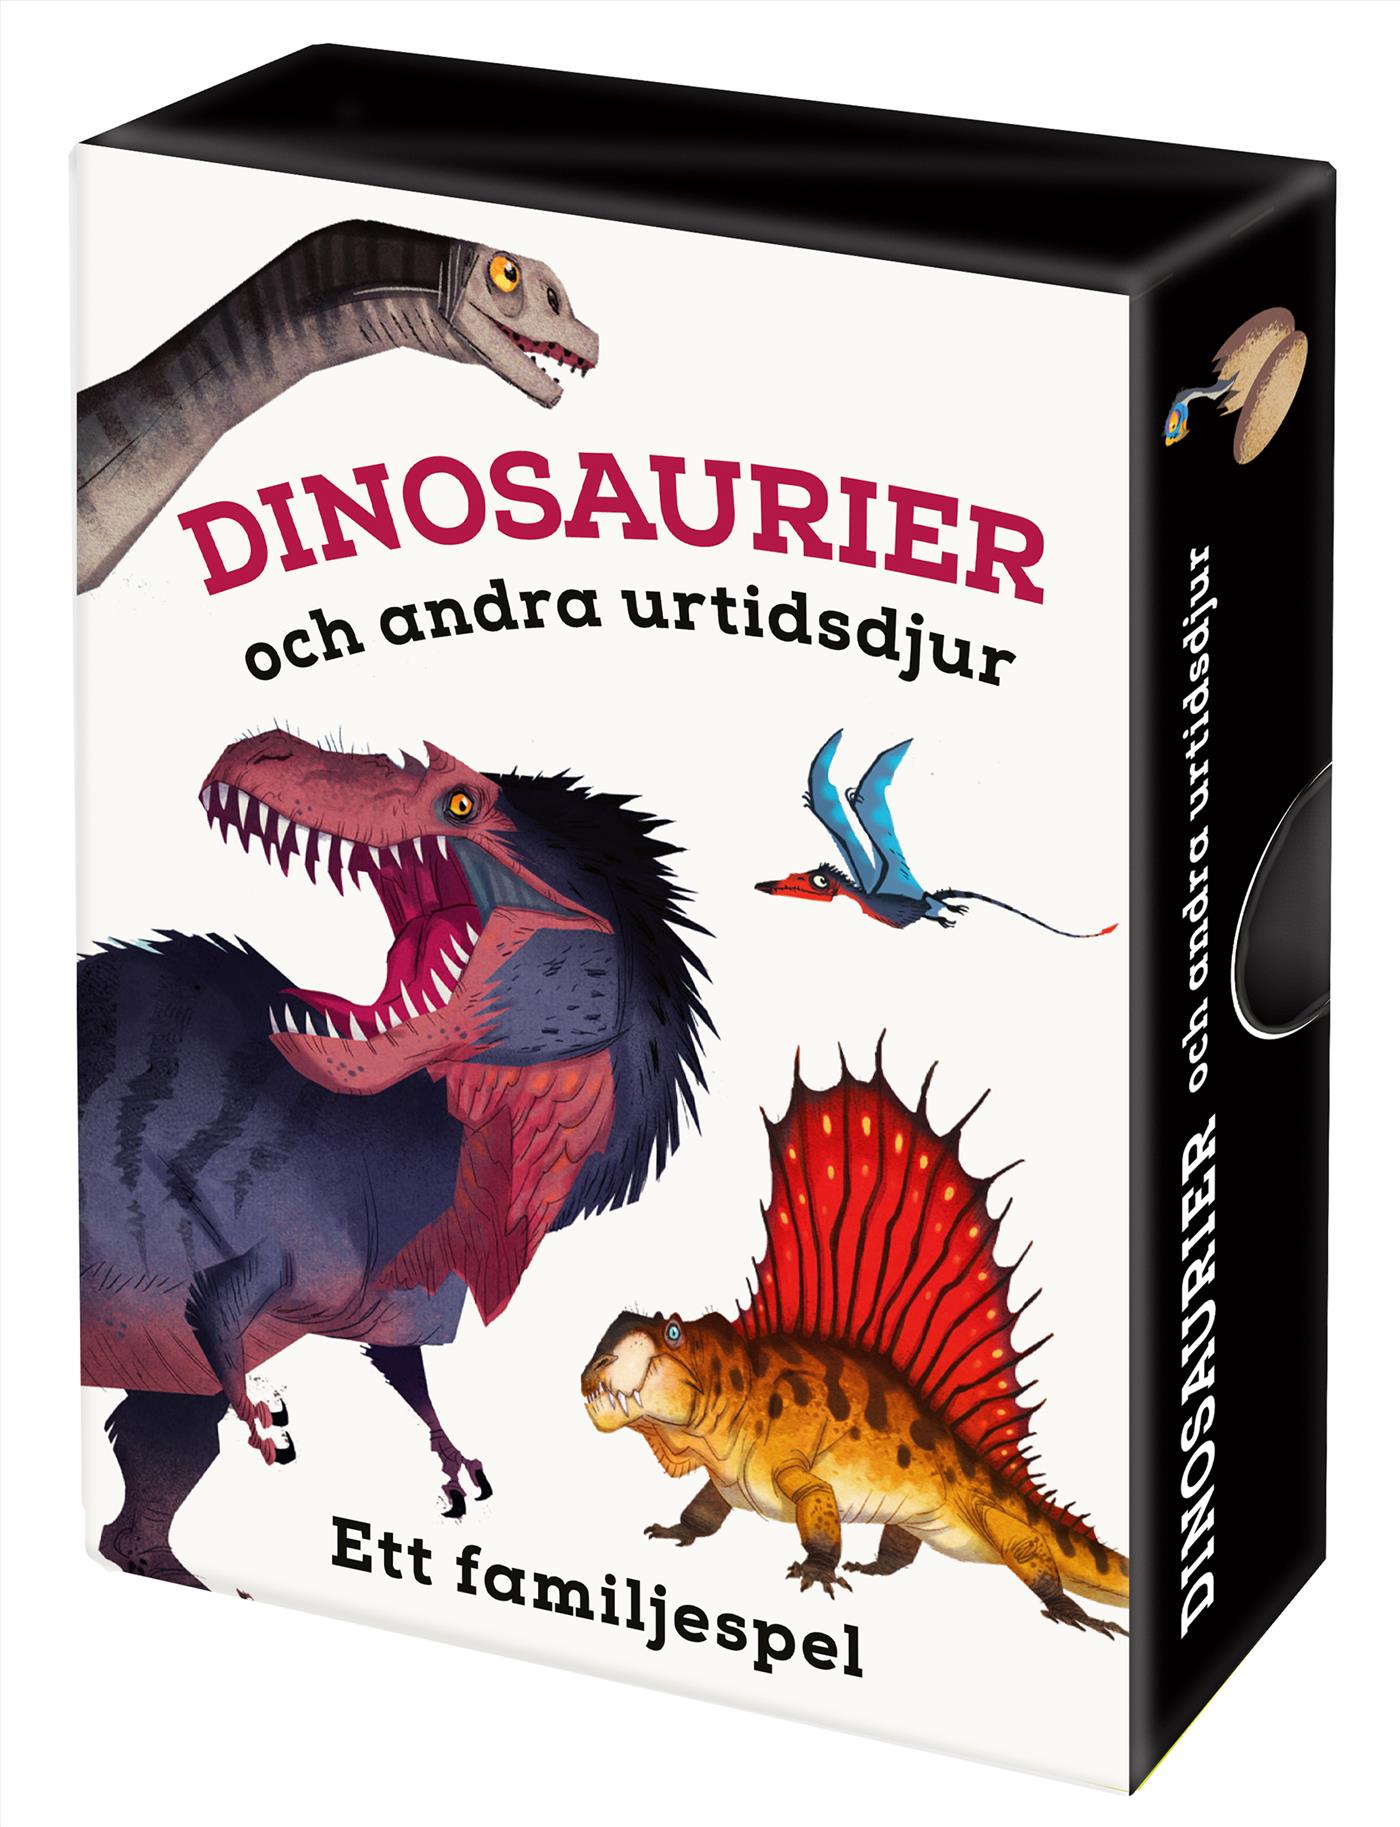 Dinosaurier och andra urtidsdjur - Ett familjespel